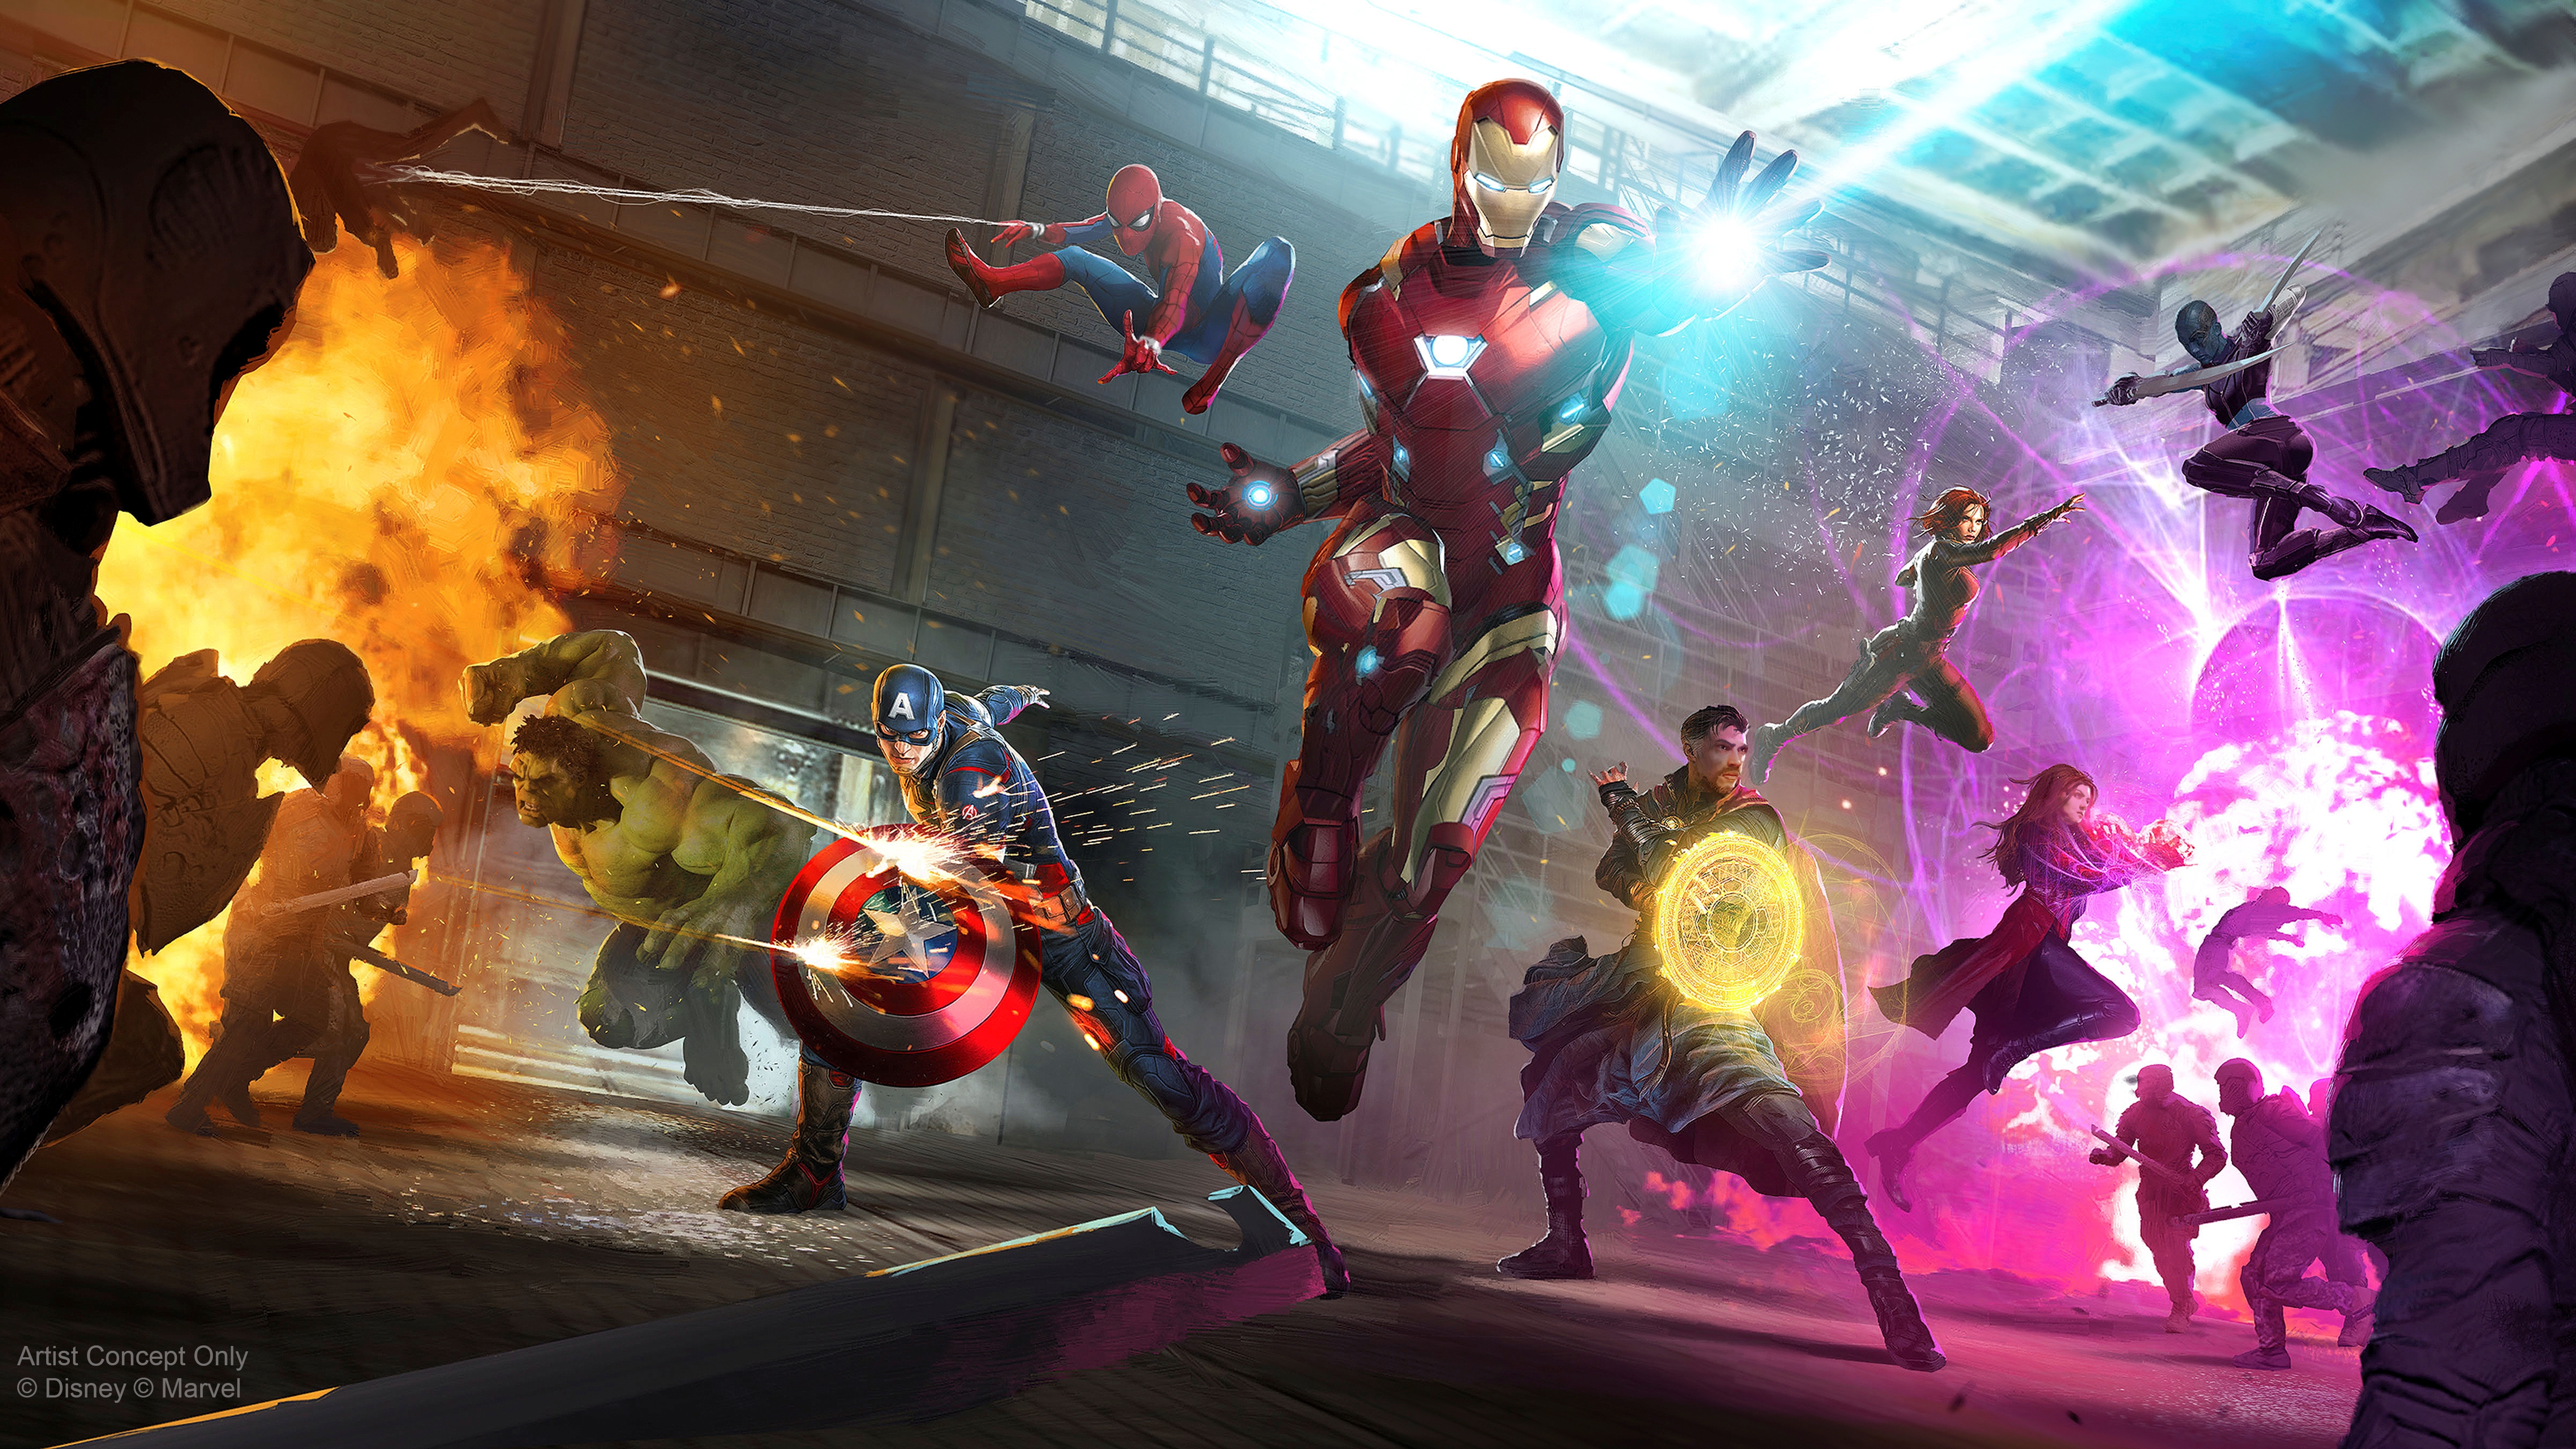 Avengers Infinity War Fan Art Wallpapers